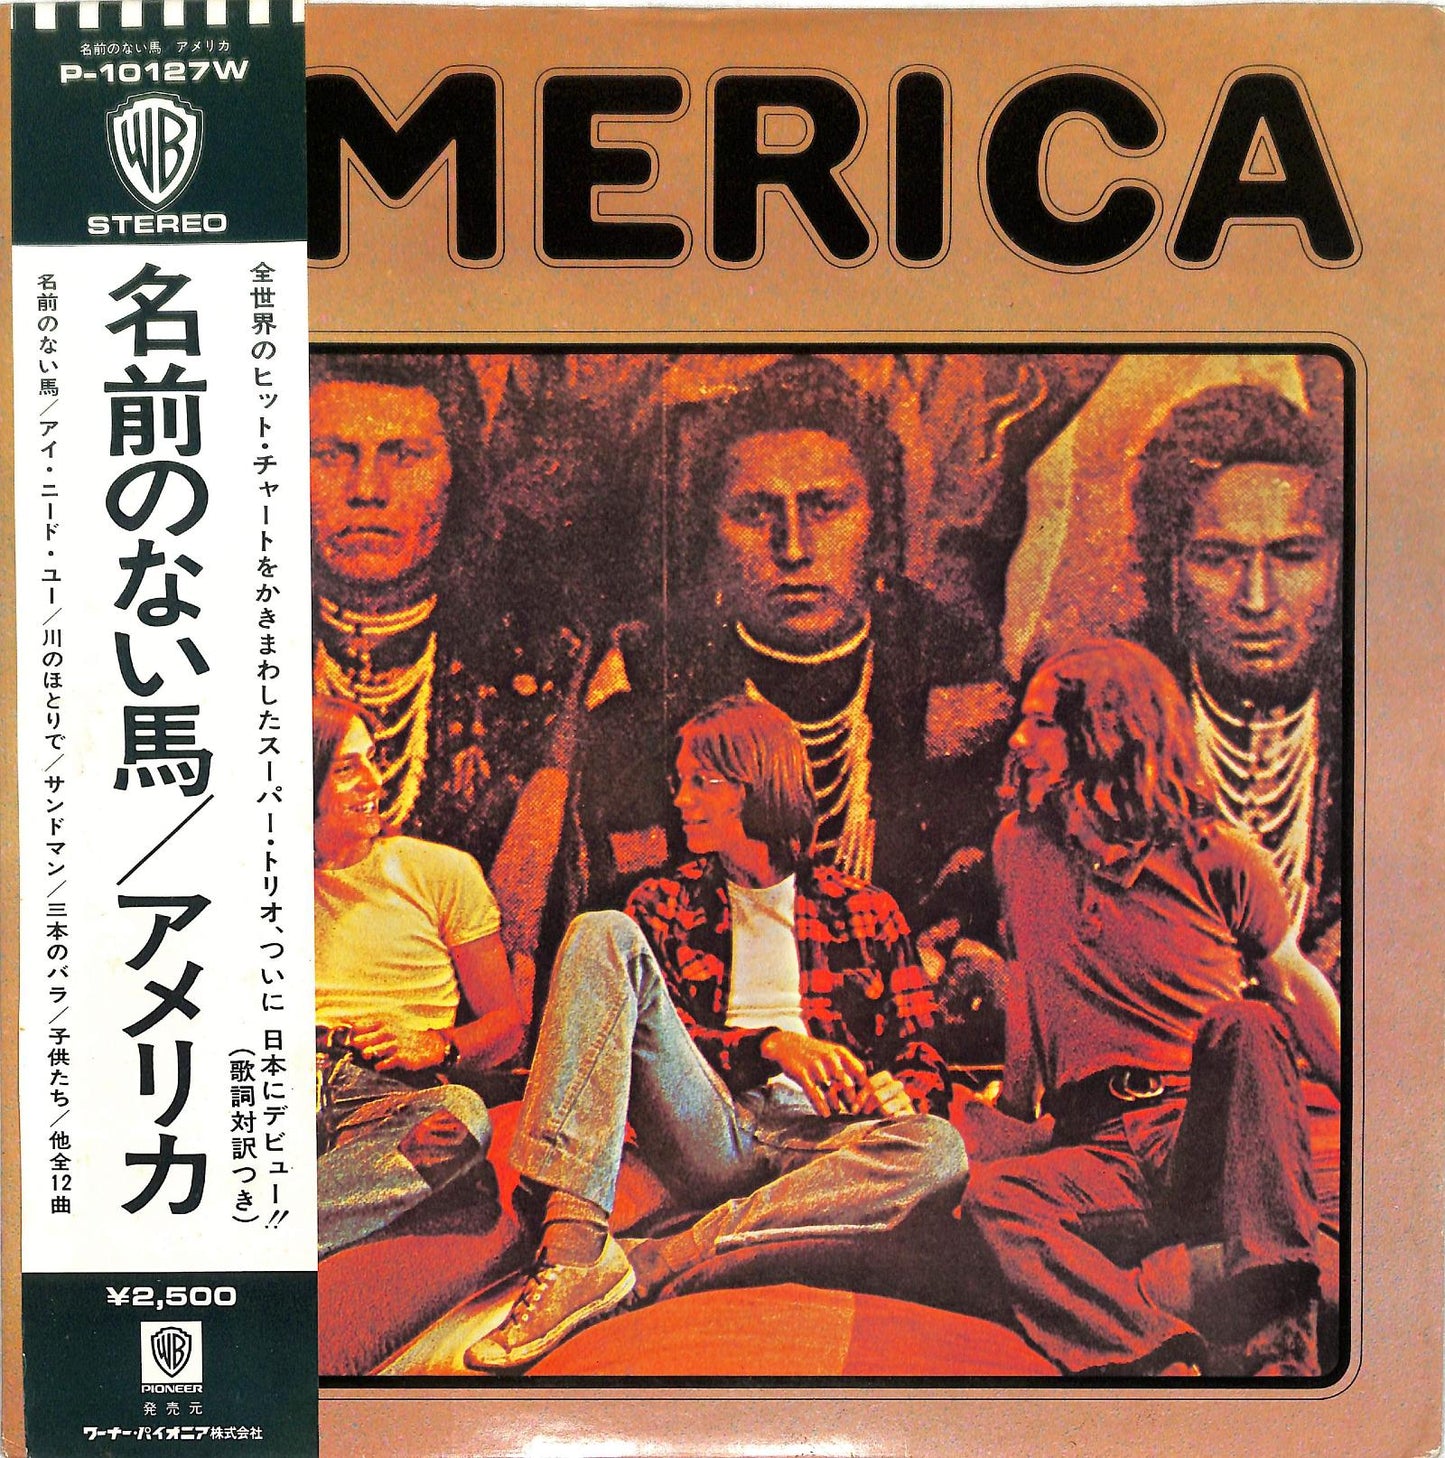 AMERICA - America